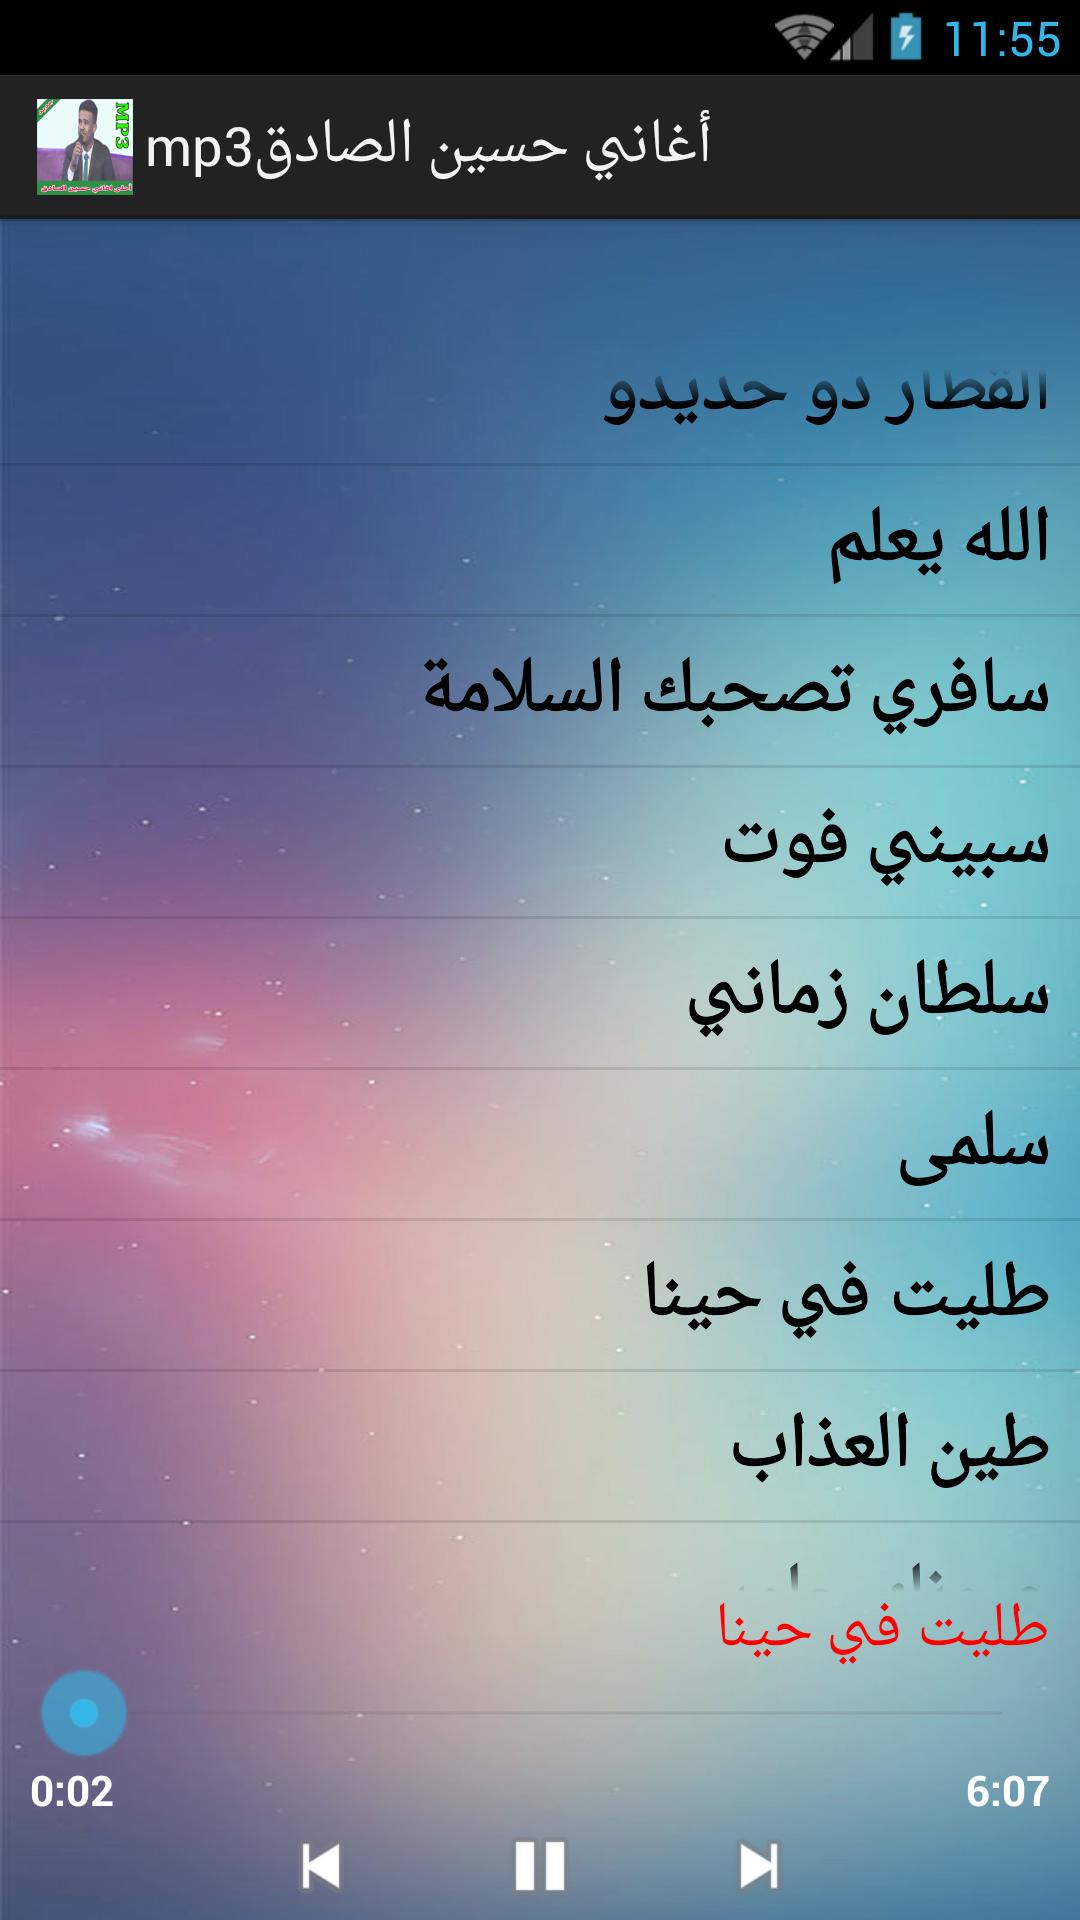 أغاني حسين الصادق mp3 for Android - APK Download